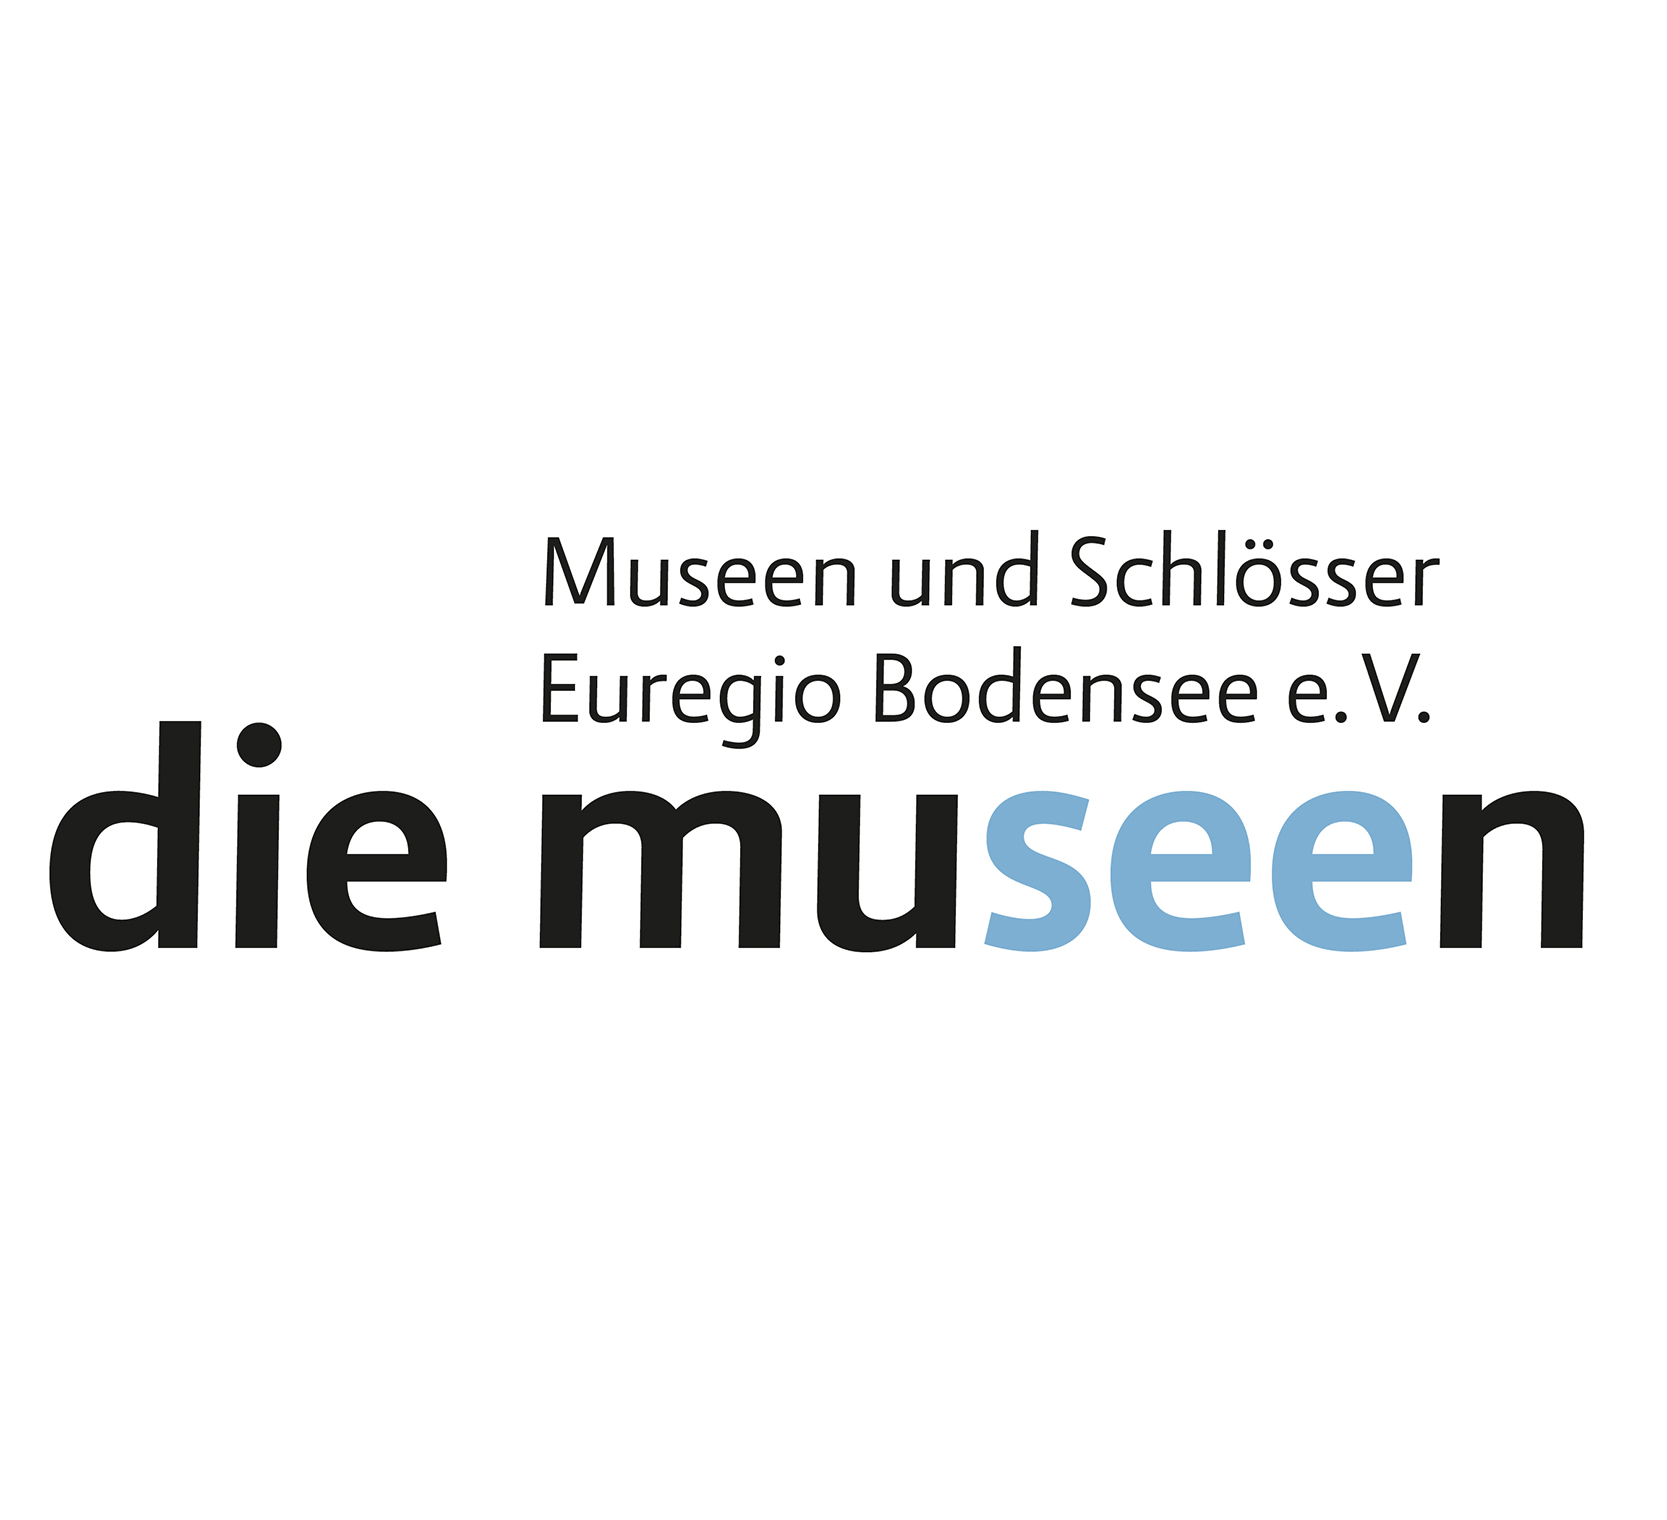 die museen Logotype 1.0